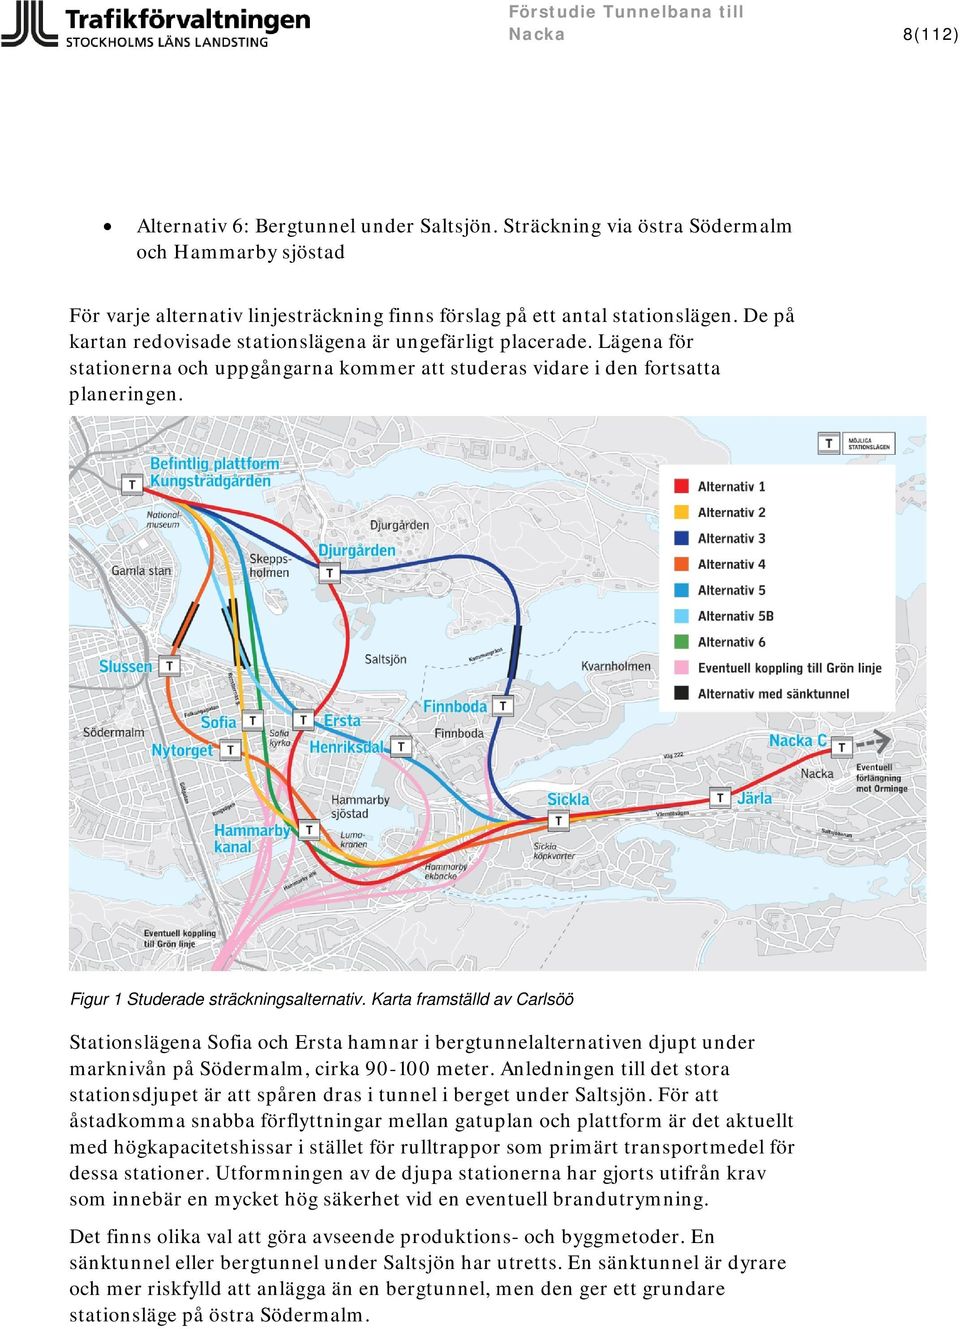 Karta framställd av Carlsöö Stationslägena Sofia och Ersta hamnar i bergtunnelalternativen djupt under marknivån på Södermalm, cirka 90-100 meter.